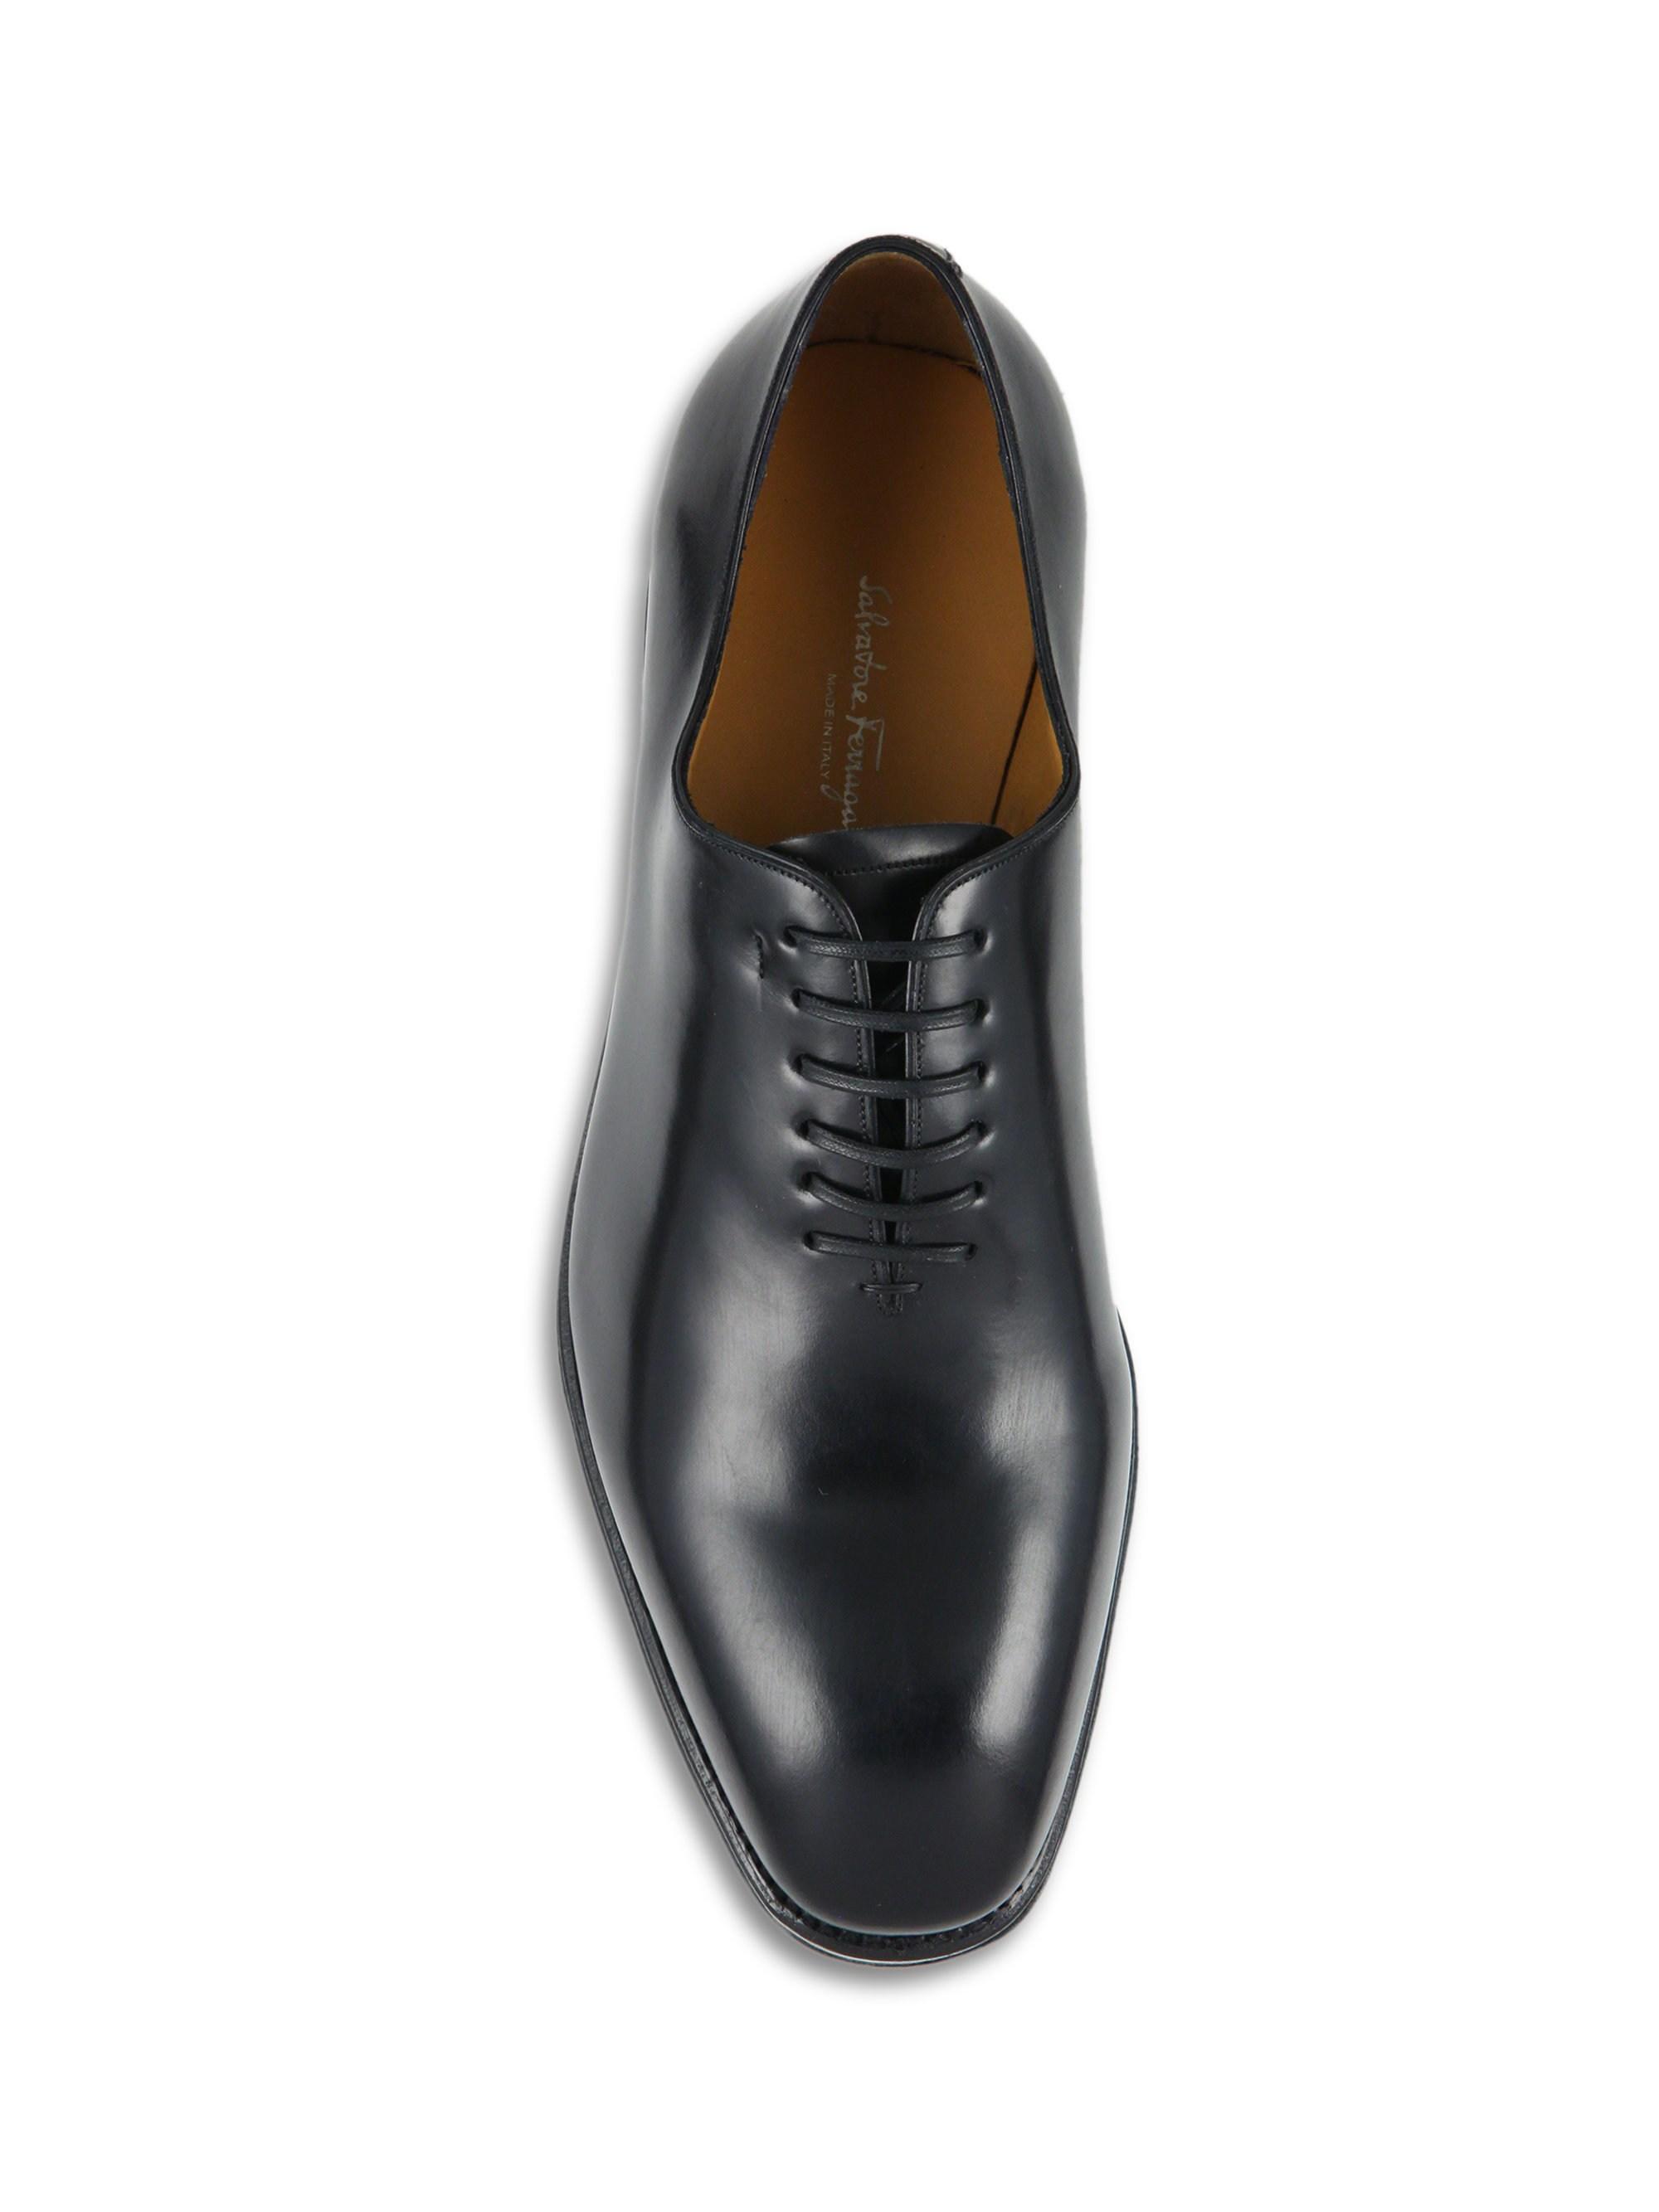 Ferragamo Leather Tramezza Carmelo Plain Toe Oxfords in Black for Men